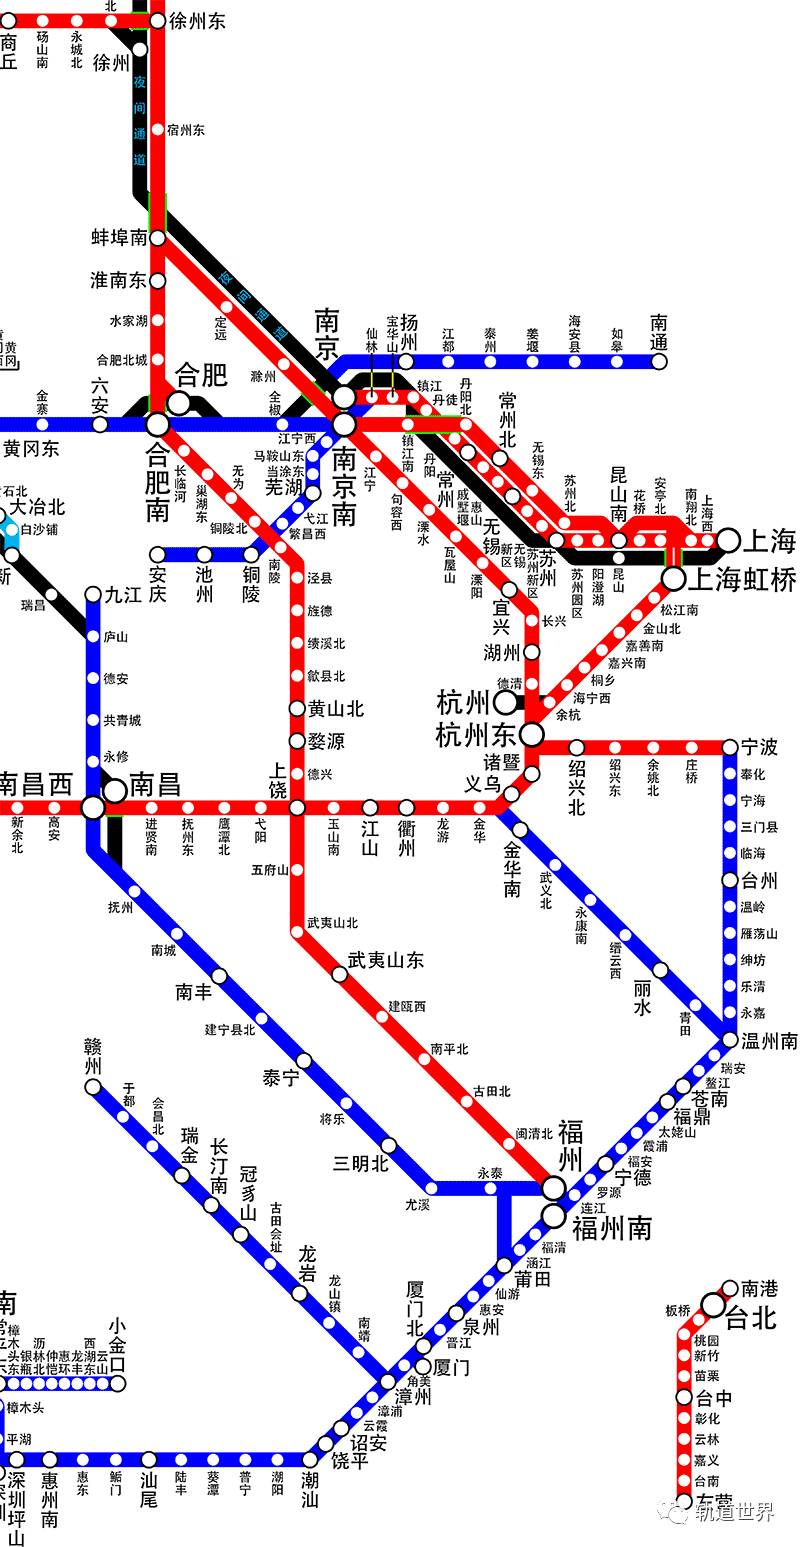 高速铁路运营线路图(高清)2017年7月最新版